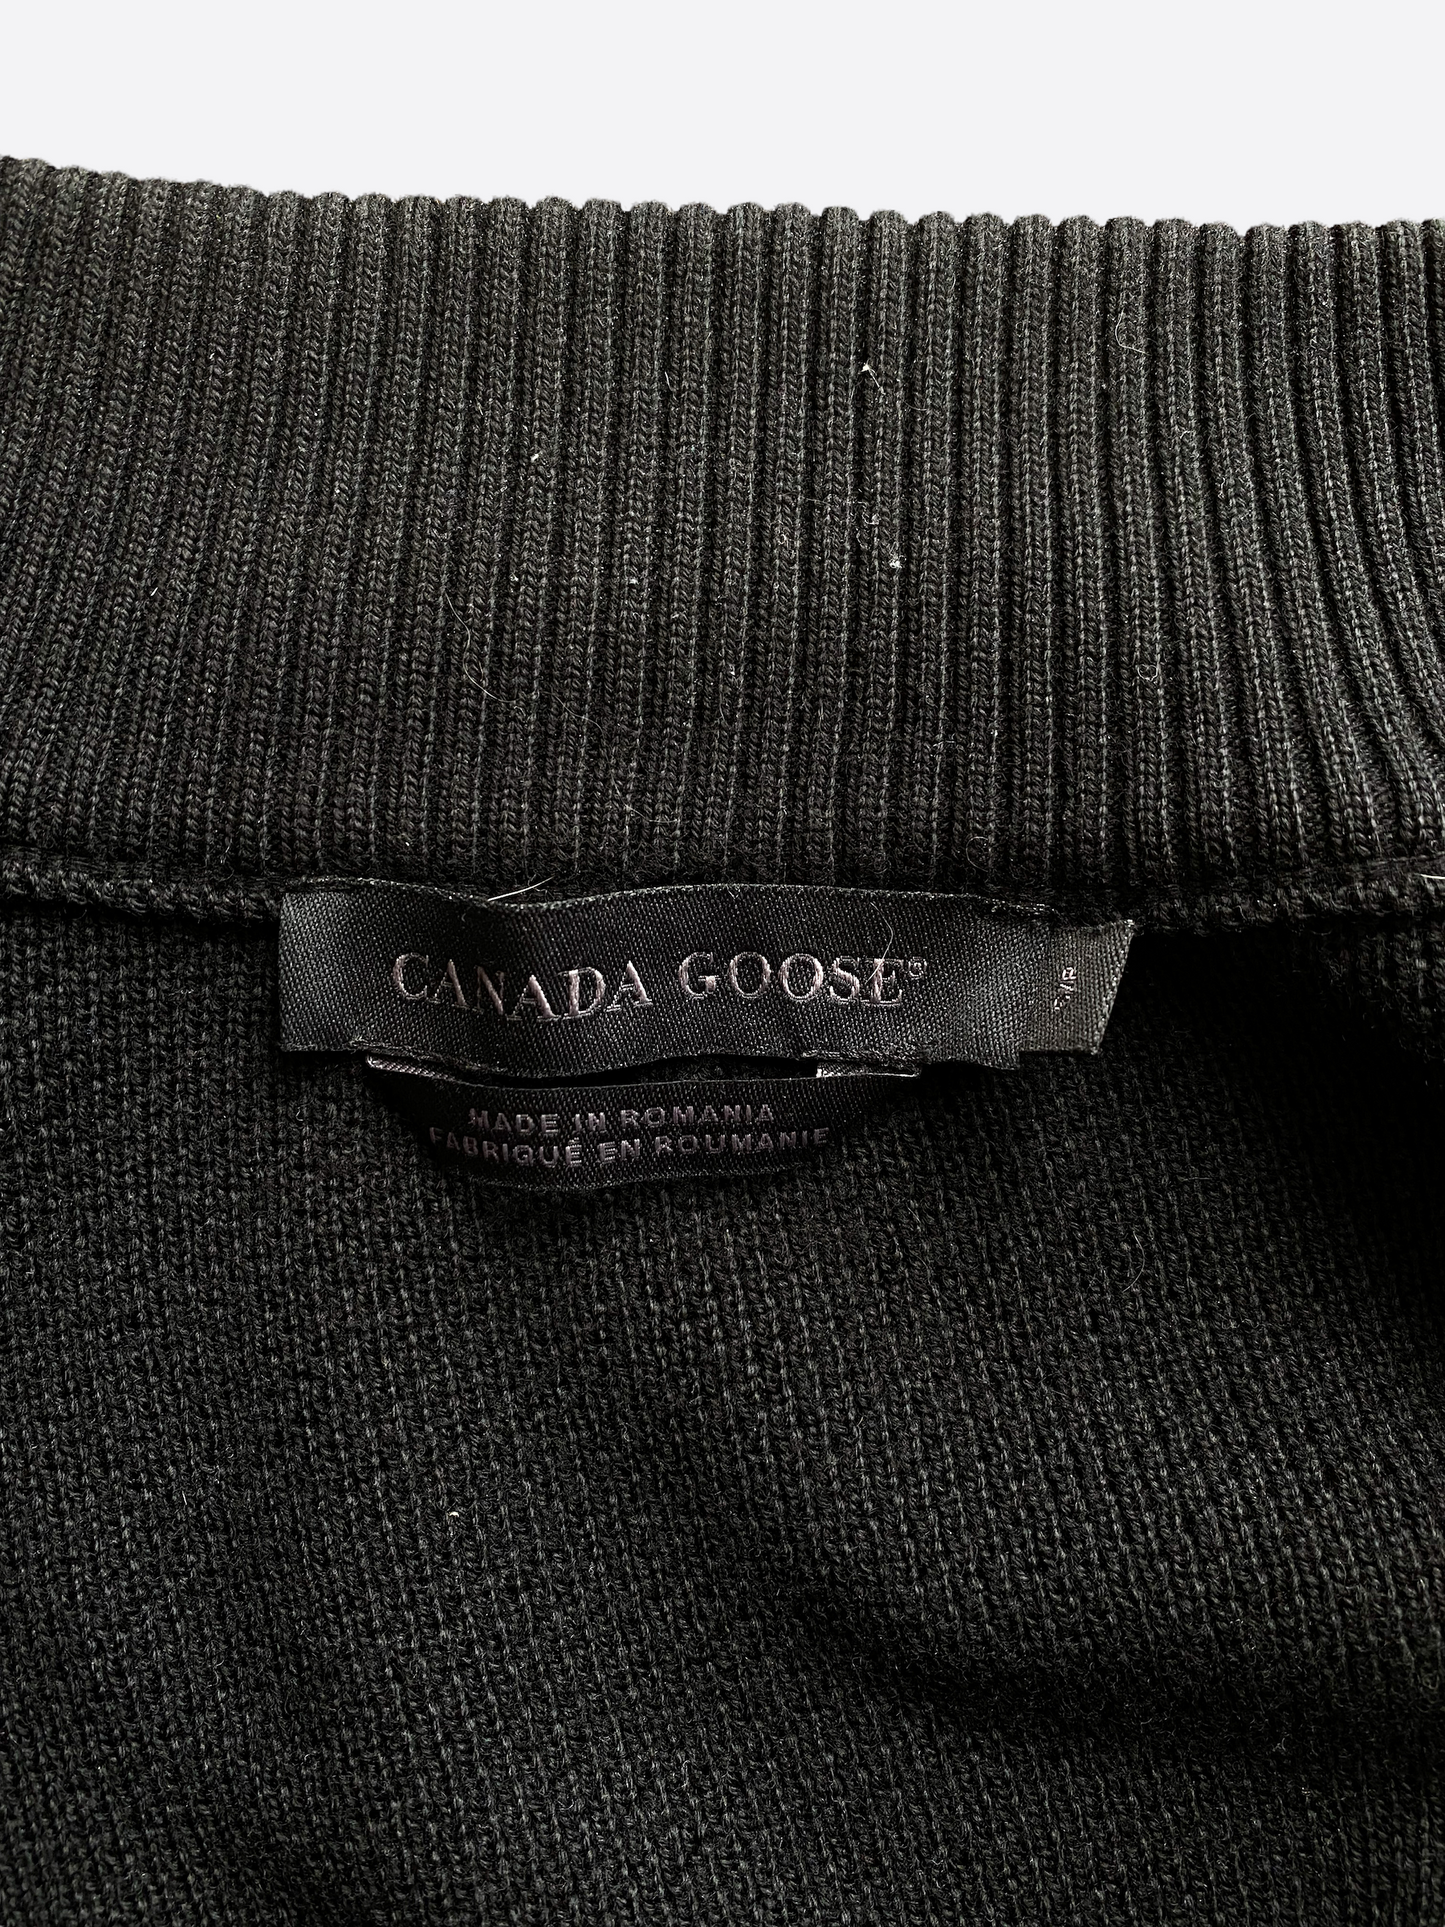 Canada Goose Black Hybridge Knit Jacket